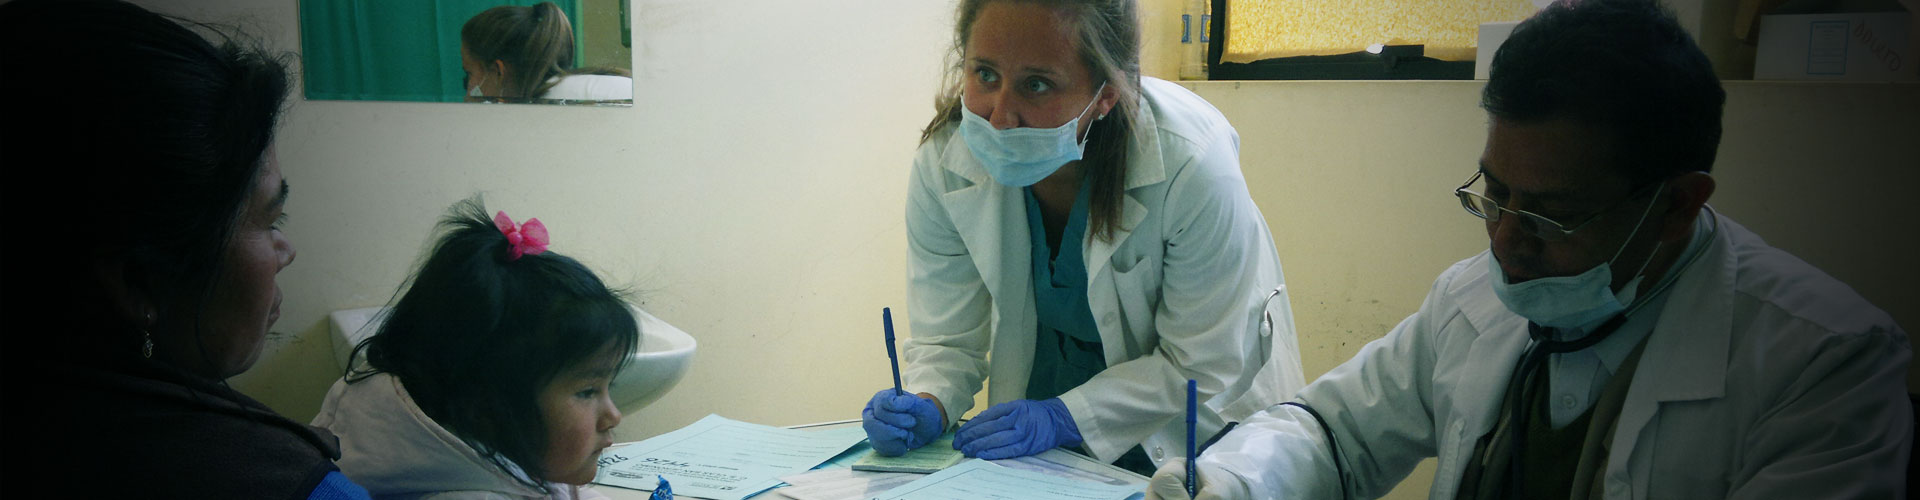 Medical Volunteer Abroad in Peru - Cusco